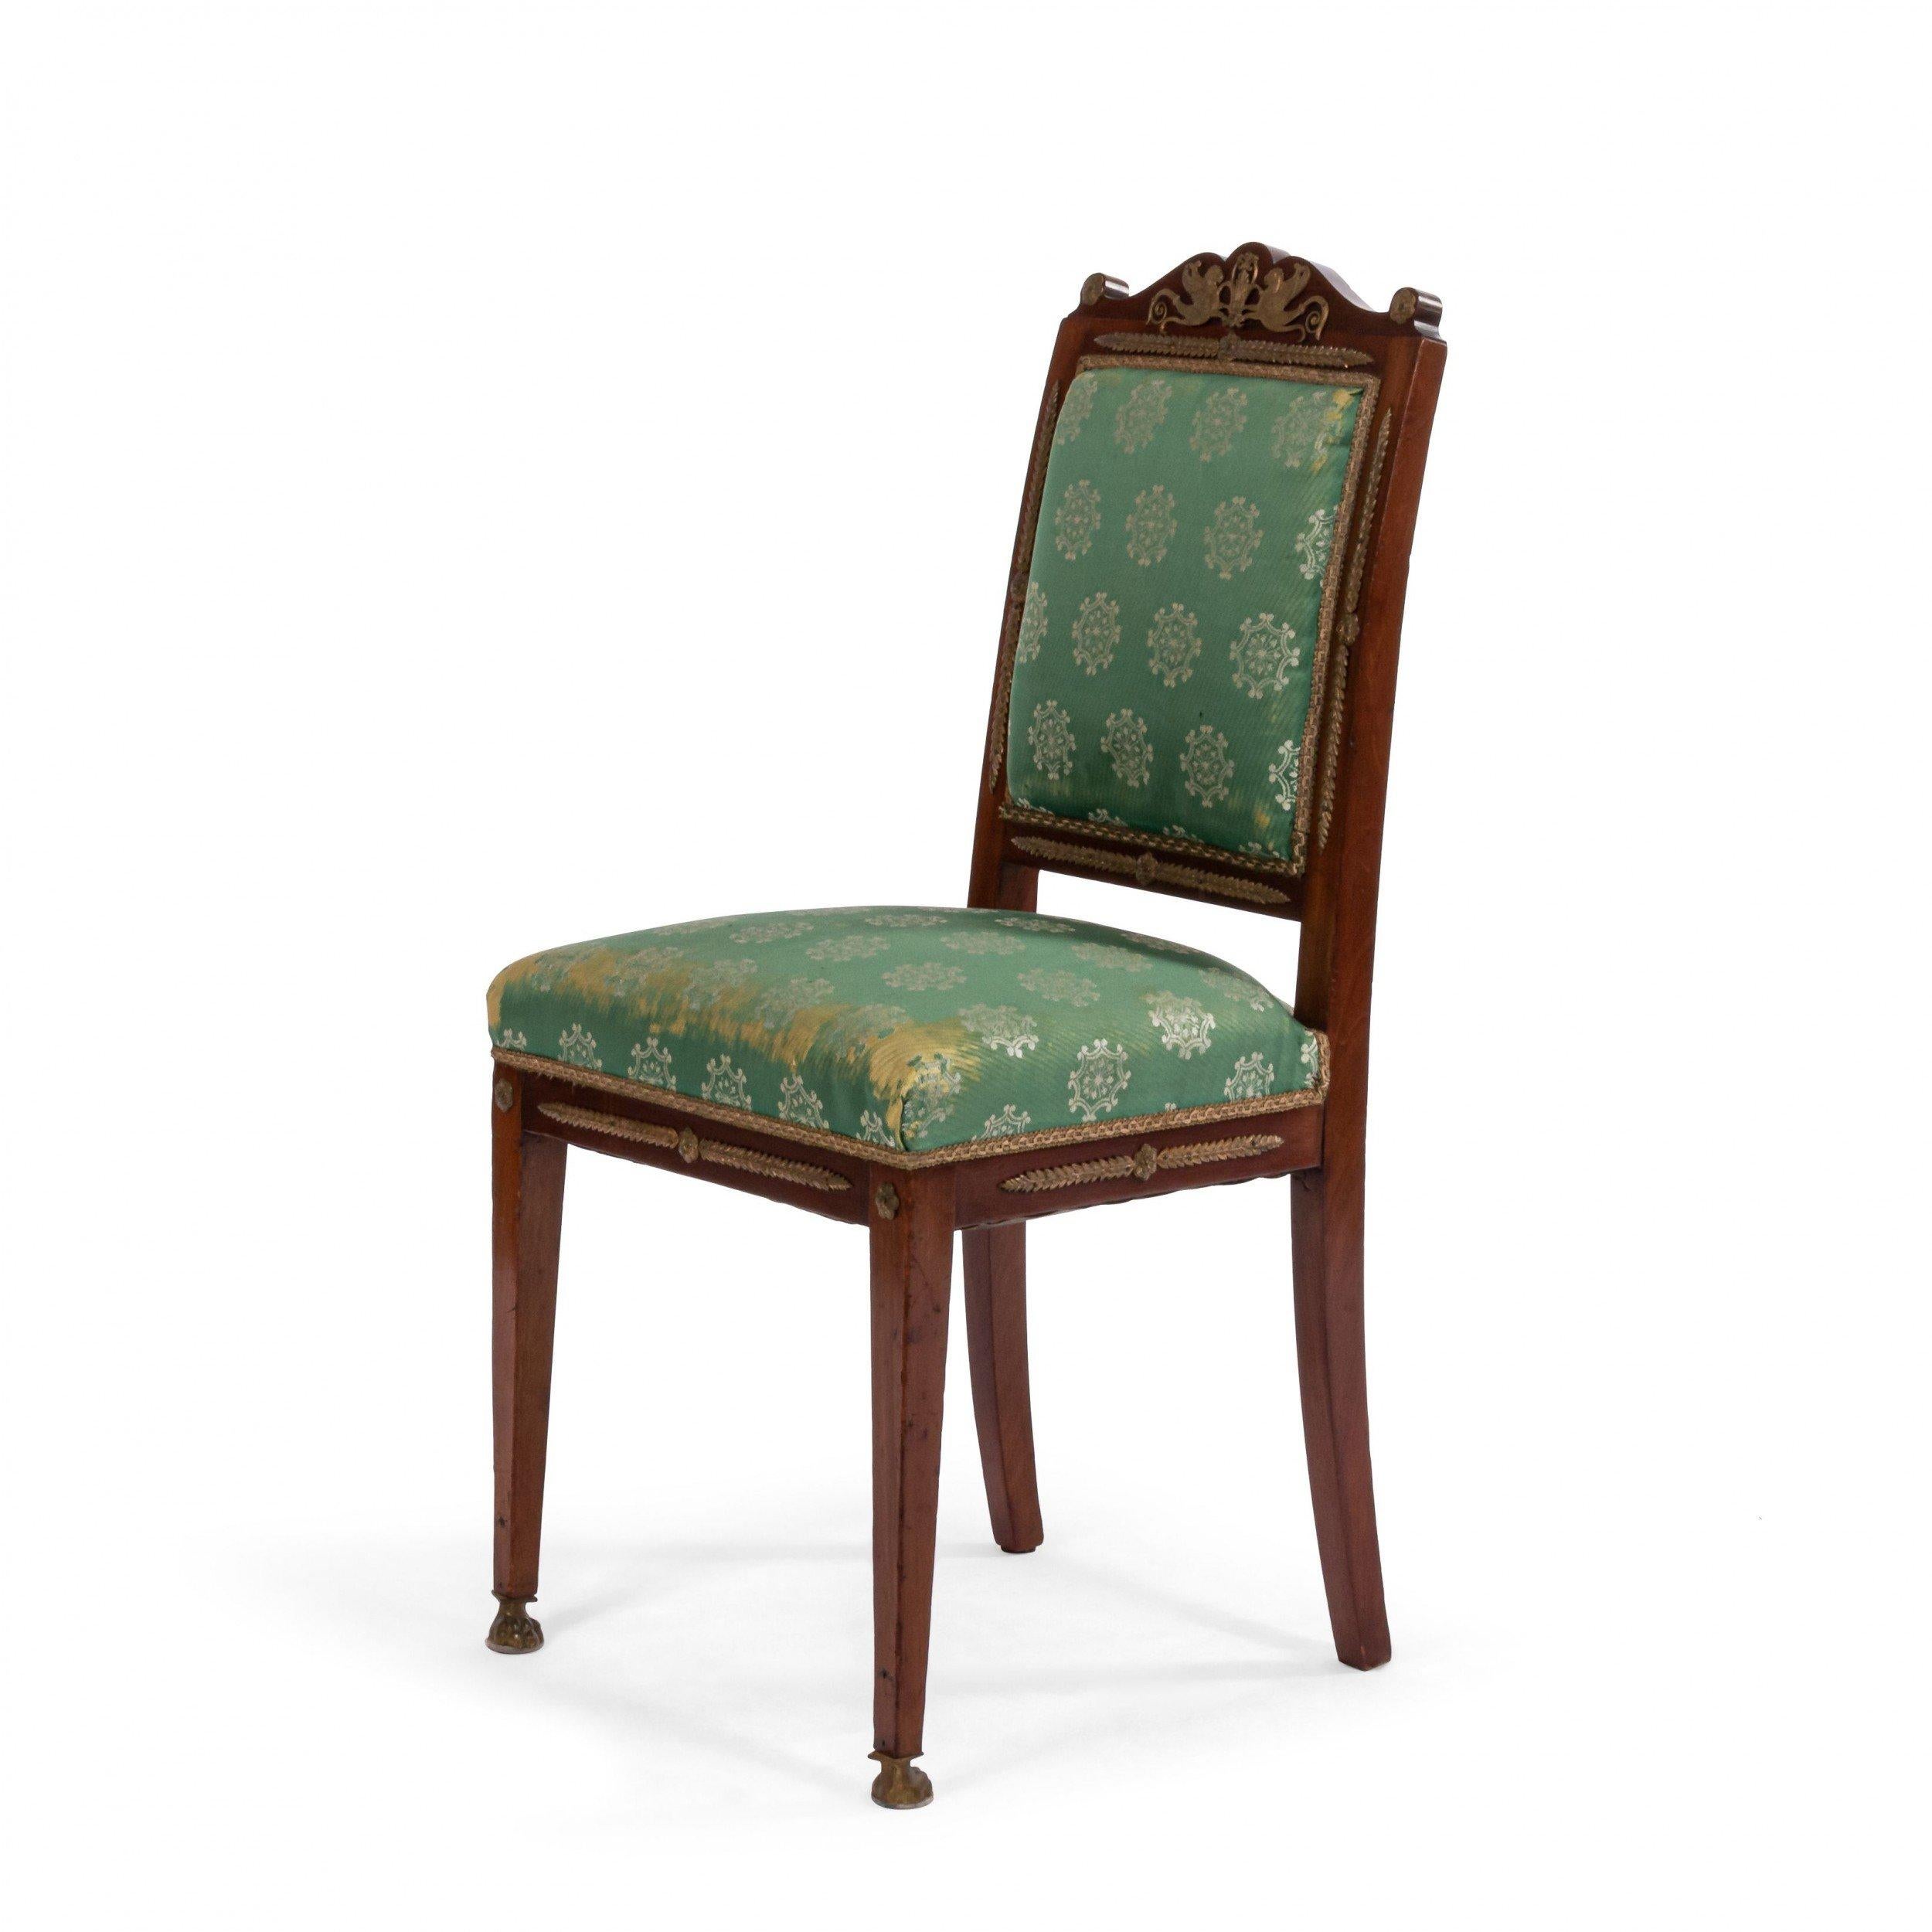 Ensemble de 8 chaises latérales de style Empire français (19e siècle) en acajou avec garniture en bronze et tapisserie en damas vert.